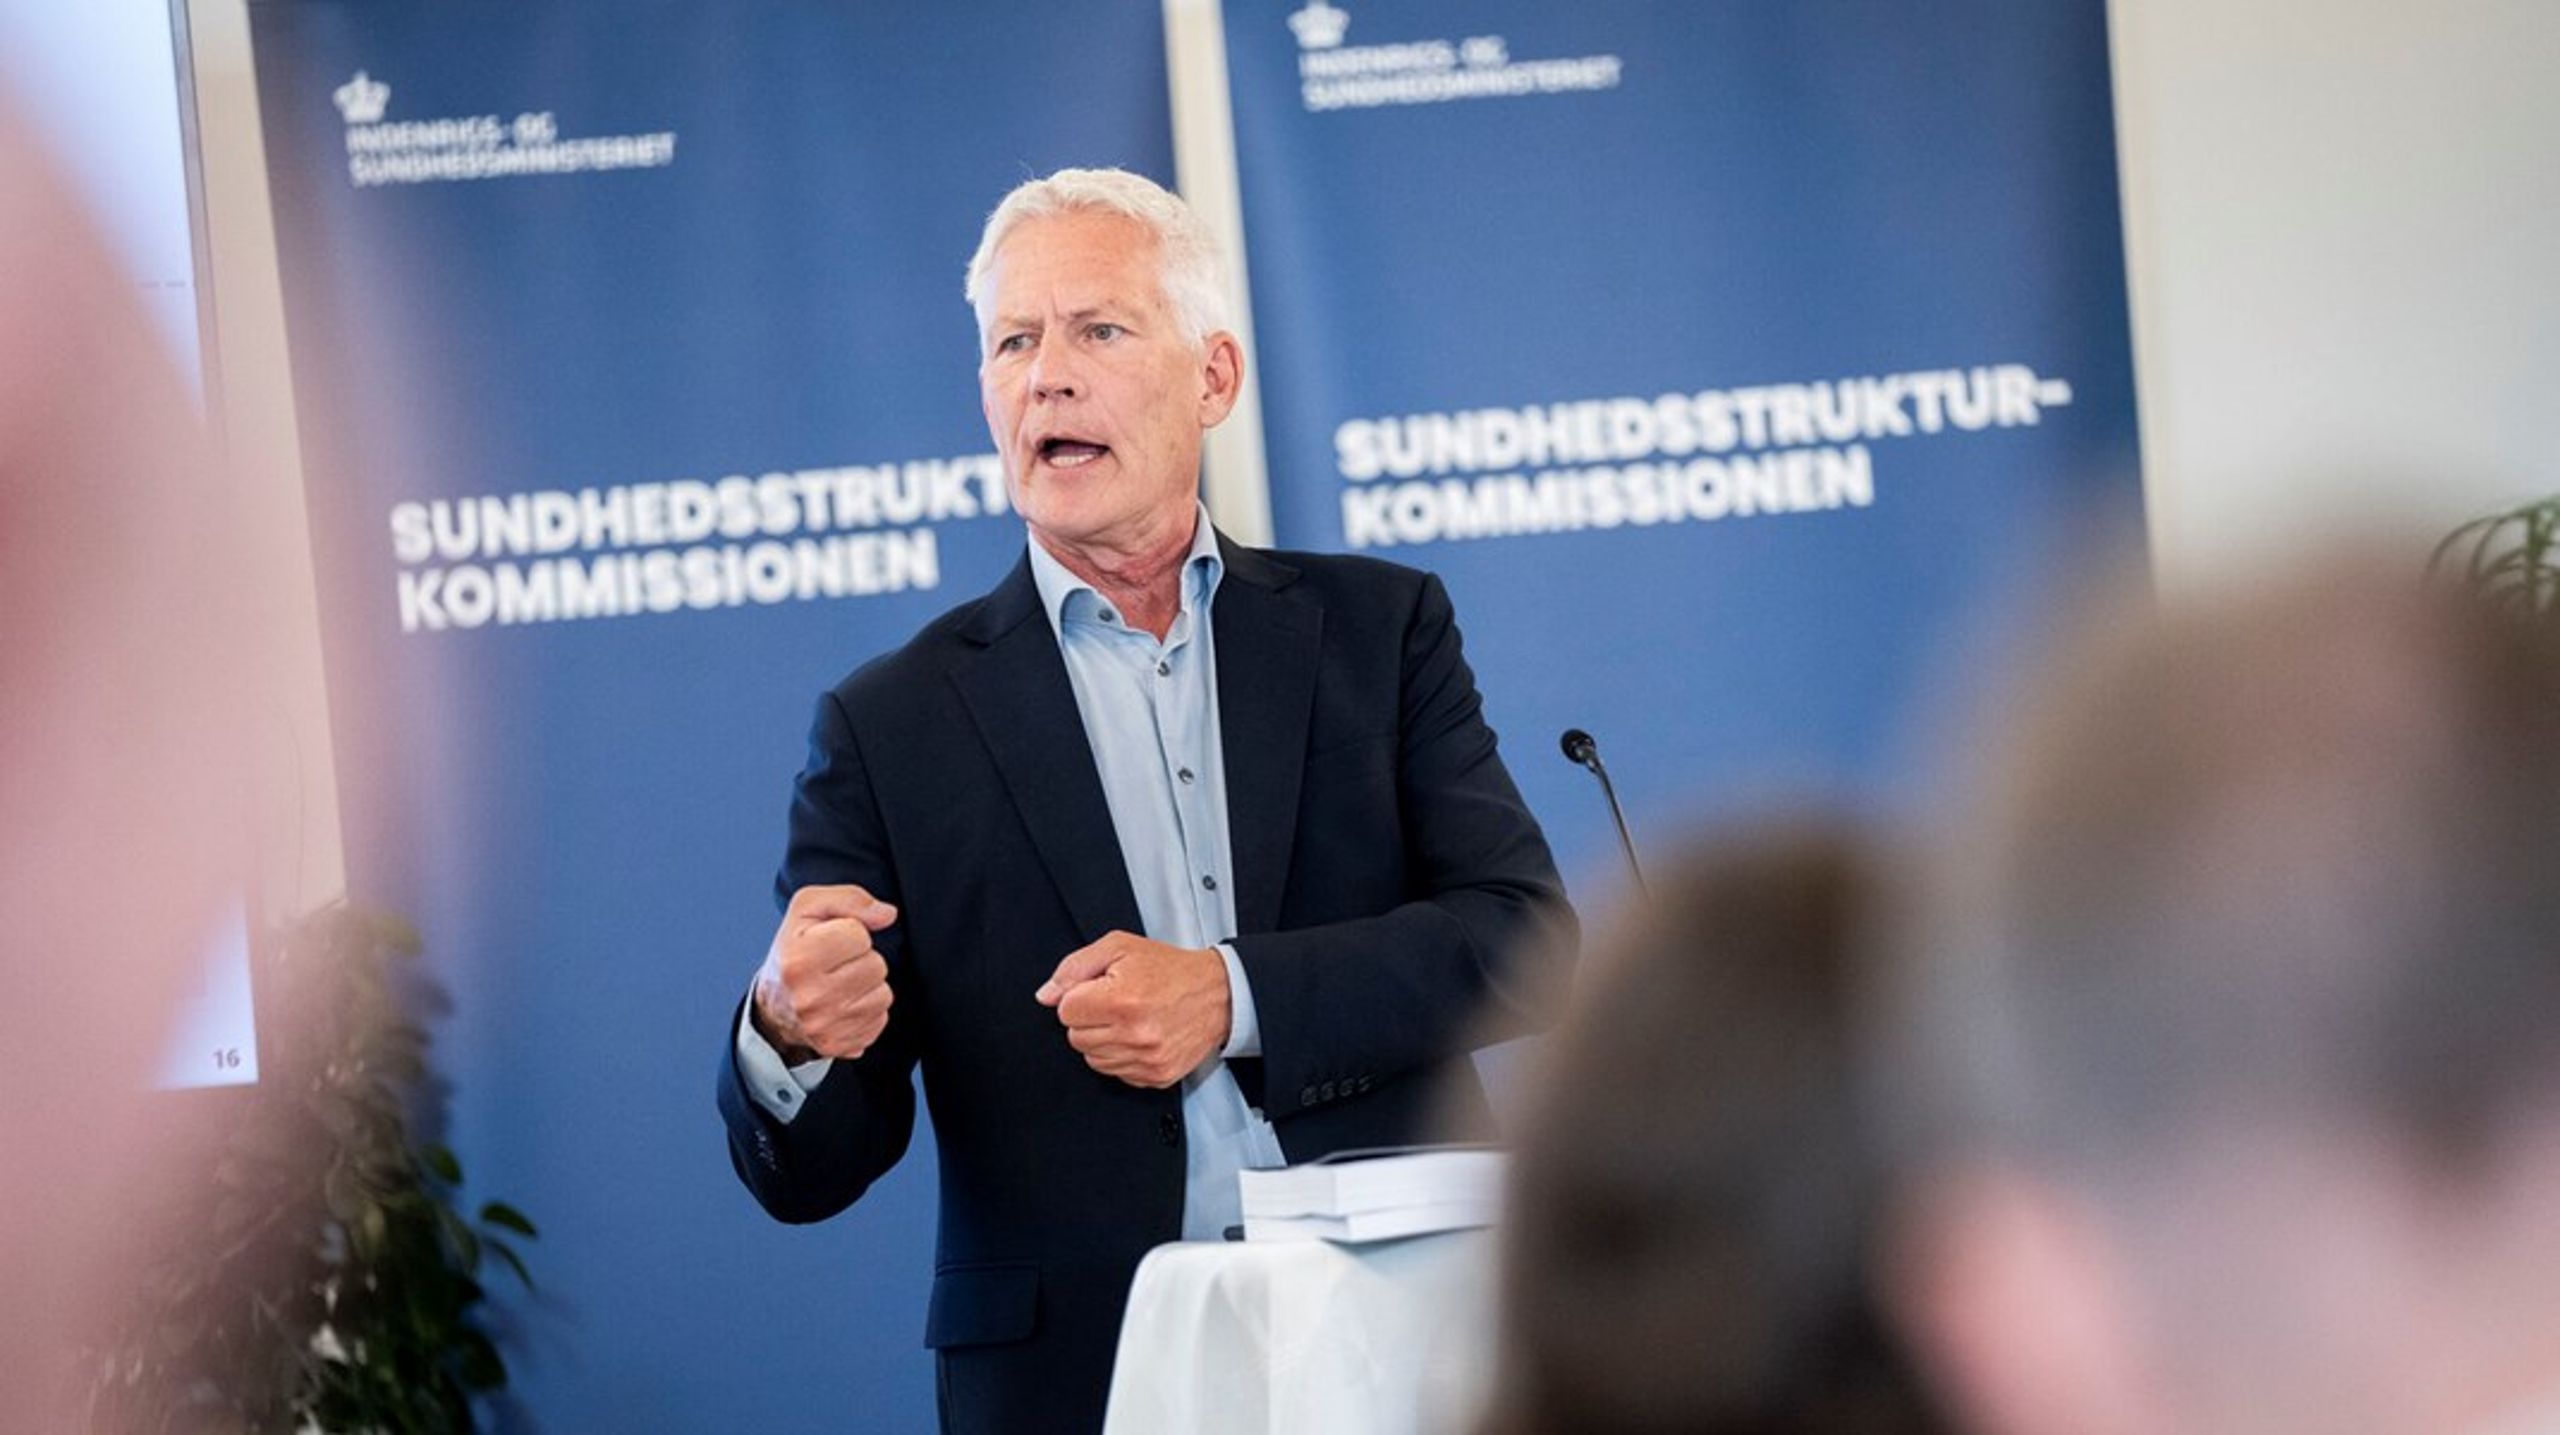 Formanden for regeringens Sundhedsstrukturkommission, Jesper Fisker, vil ikke fremhæve nogle af sine tre modeller for en ny organisering af sundhedsvæsnet frem for andre. Men én model angives dog som særlig "stærk" af kommissionen.<br>